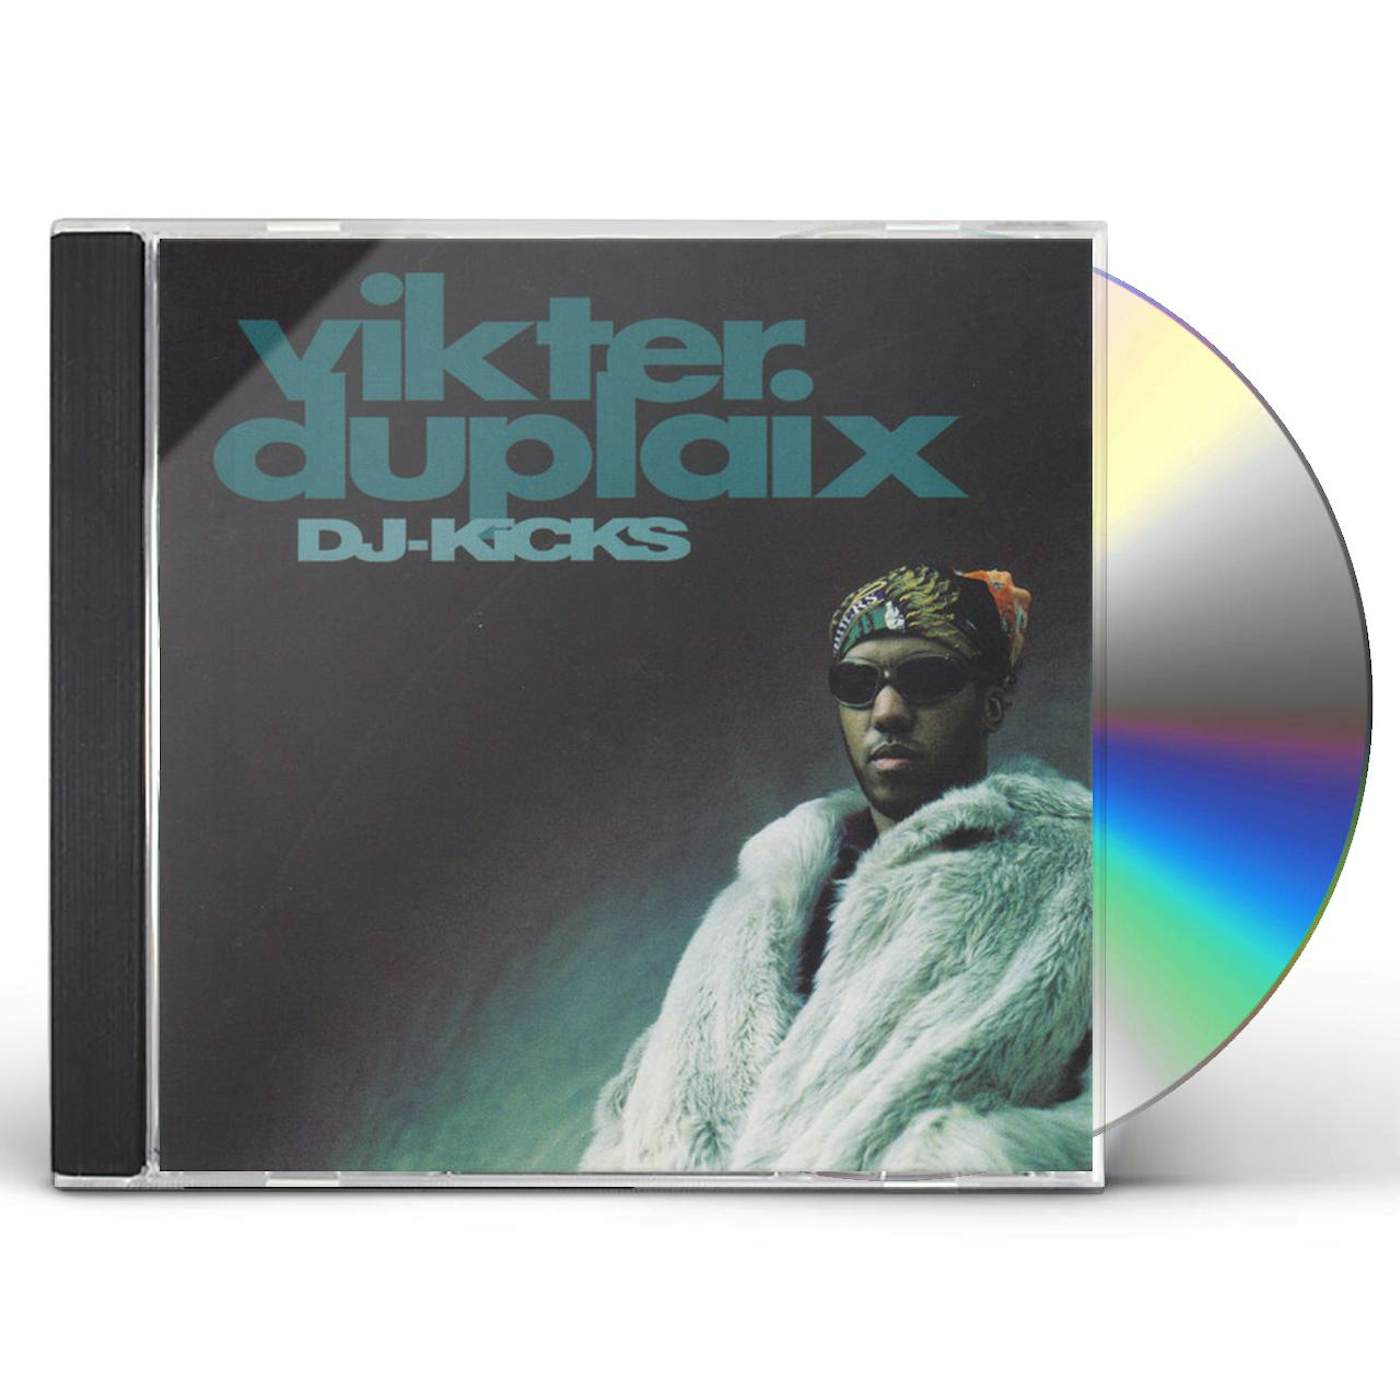 Vikter Duplaix DJ-KICKS CD